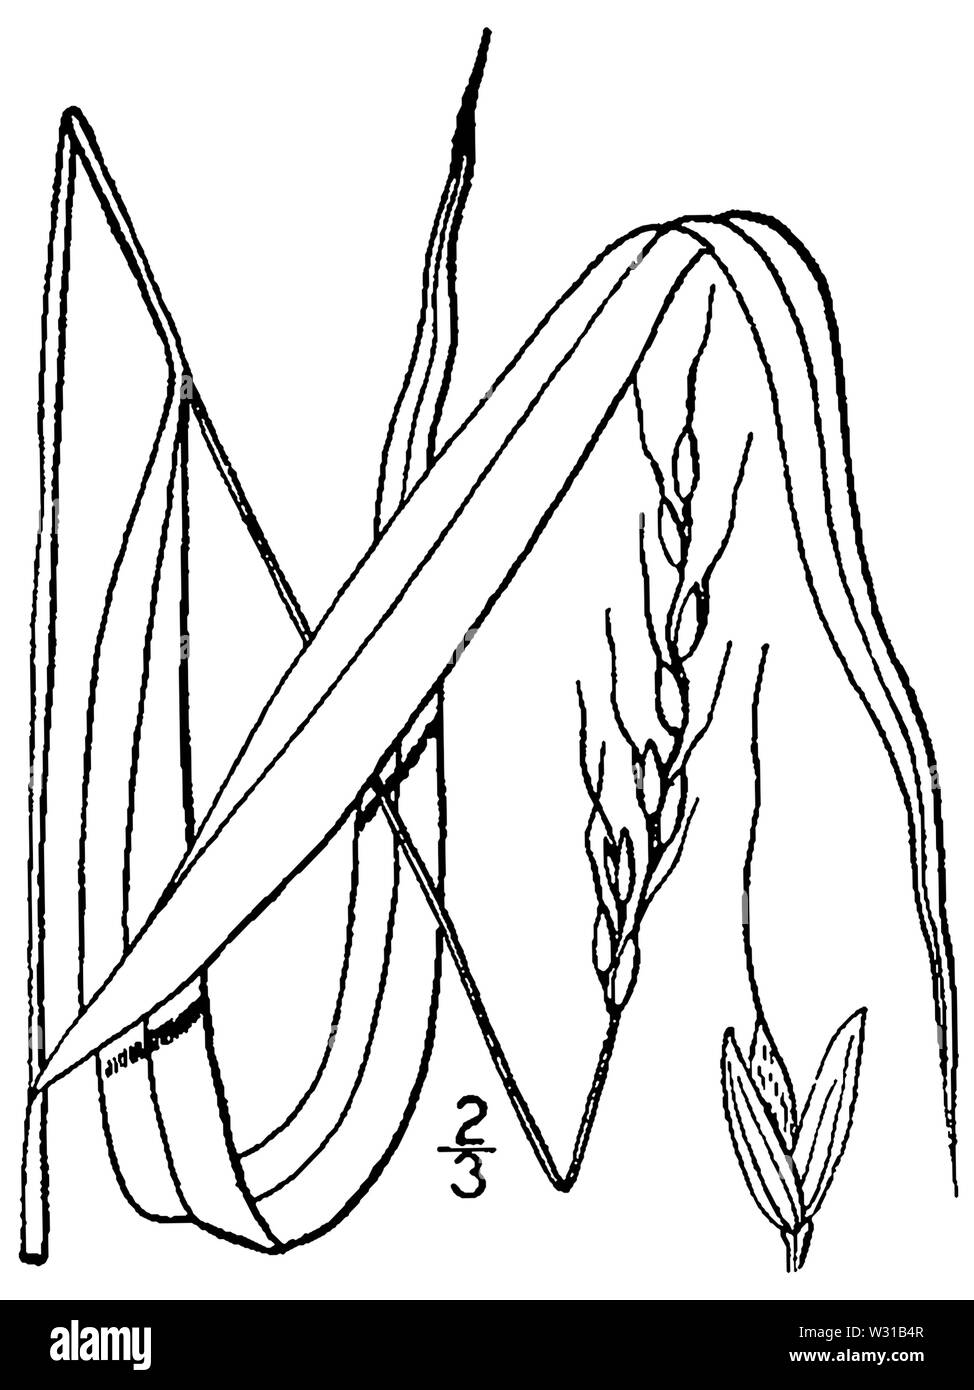 Patis racemosa (as Oryzopsis racemosa) BB-1913 Stock Photo